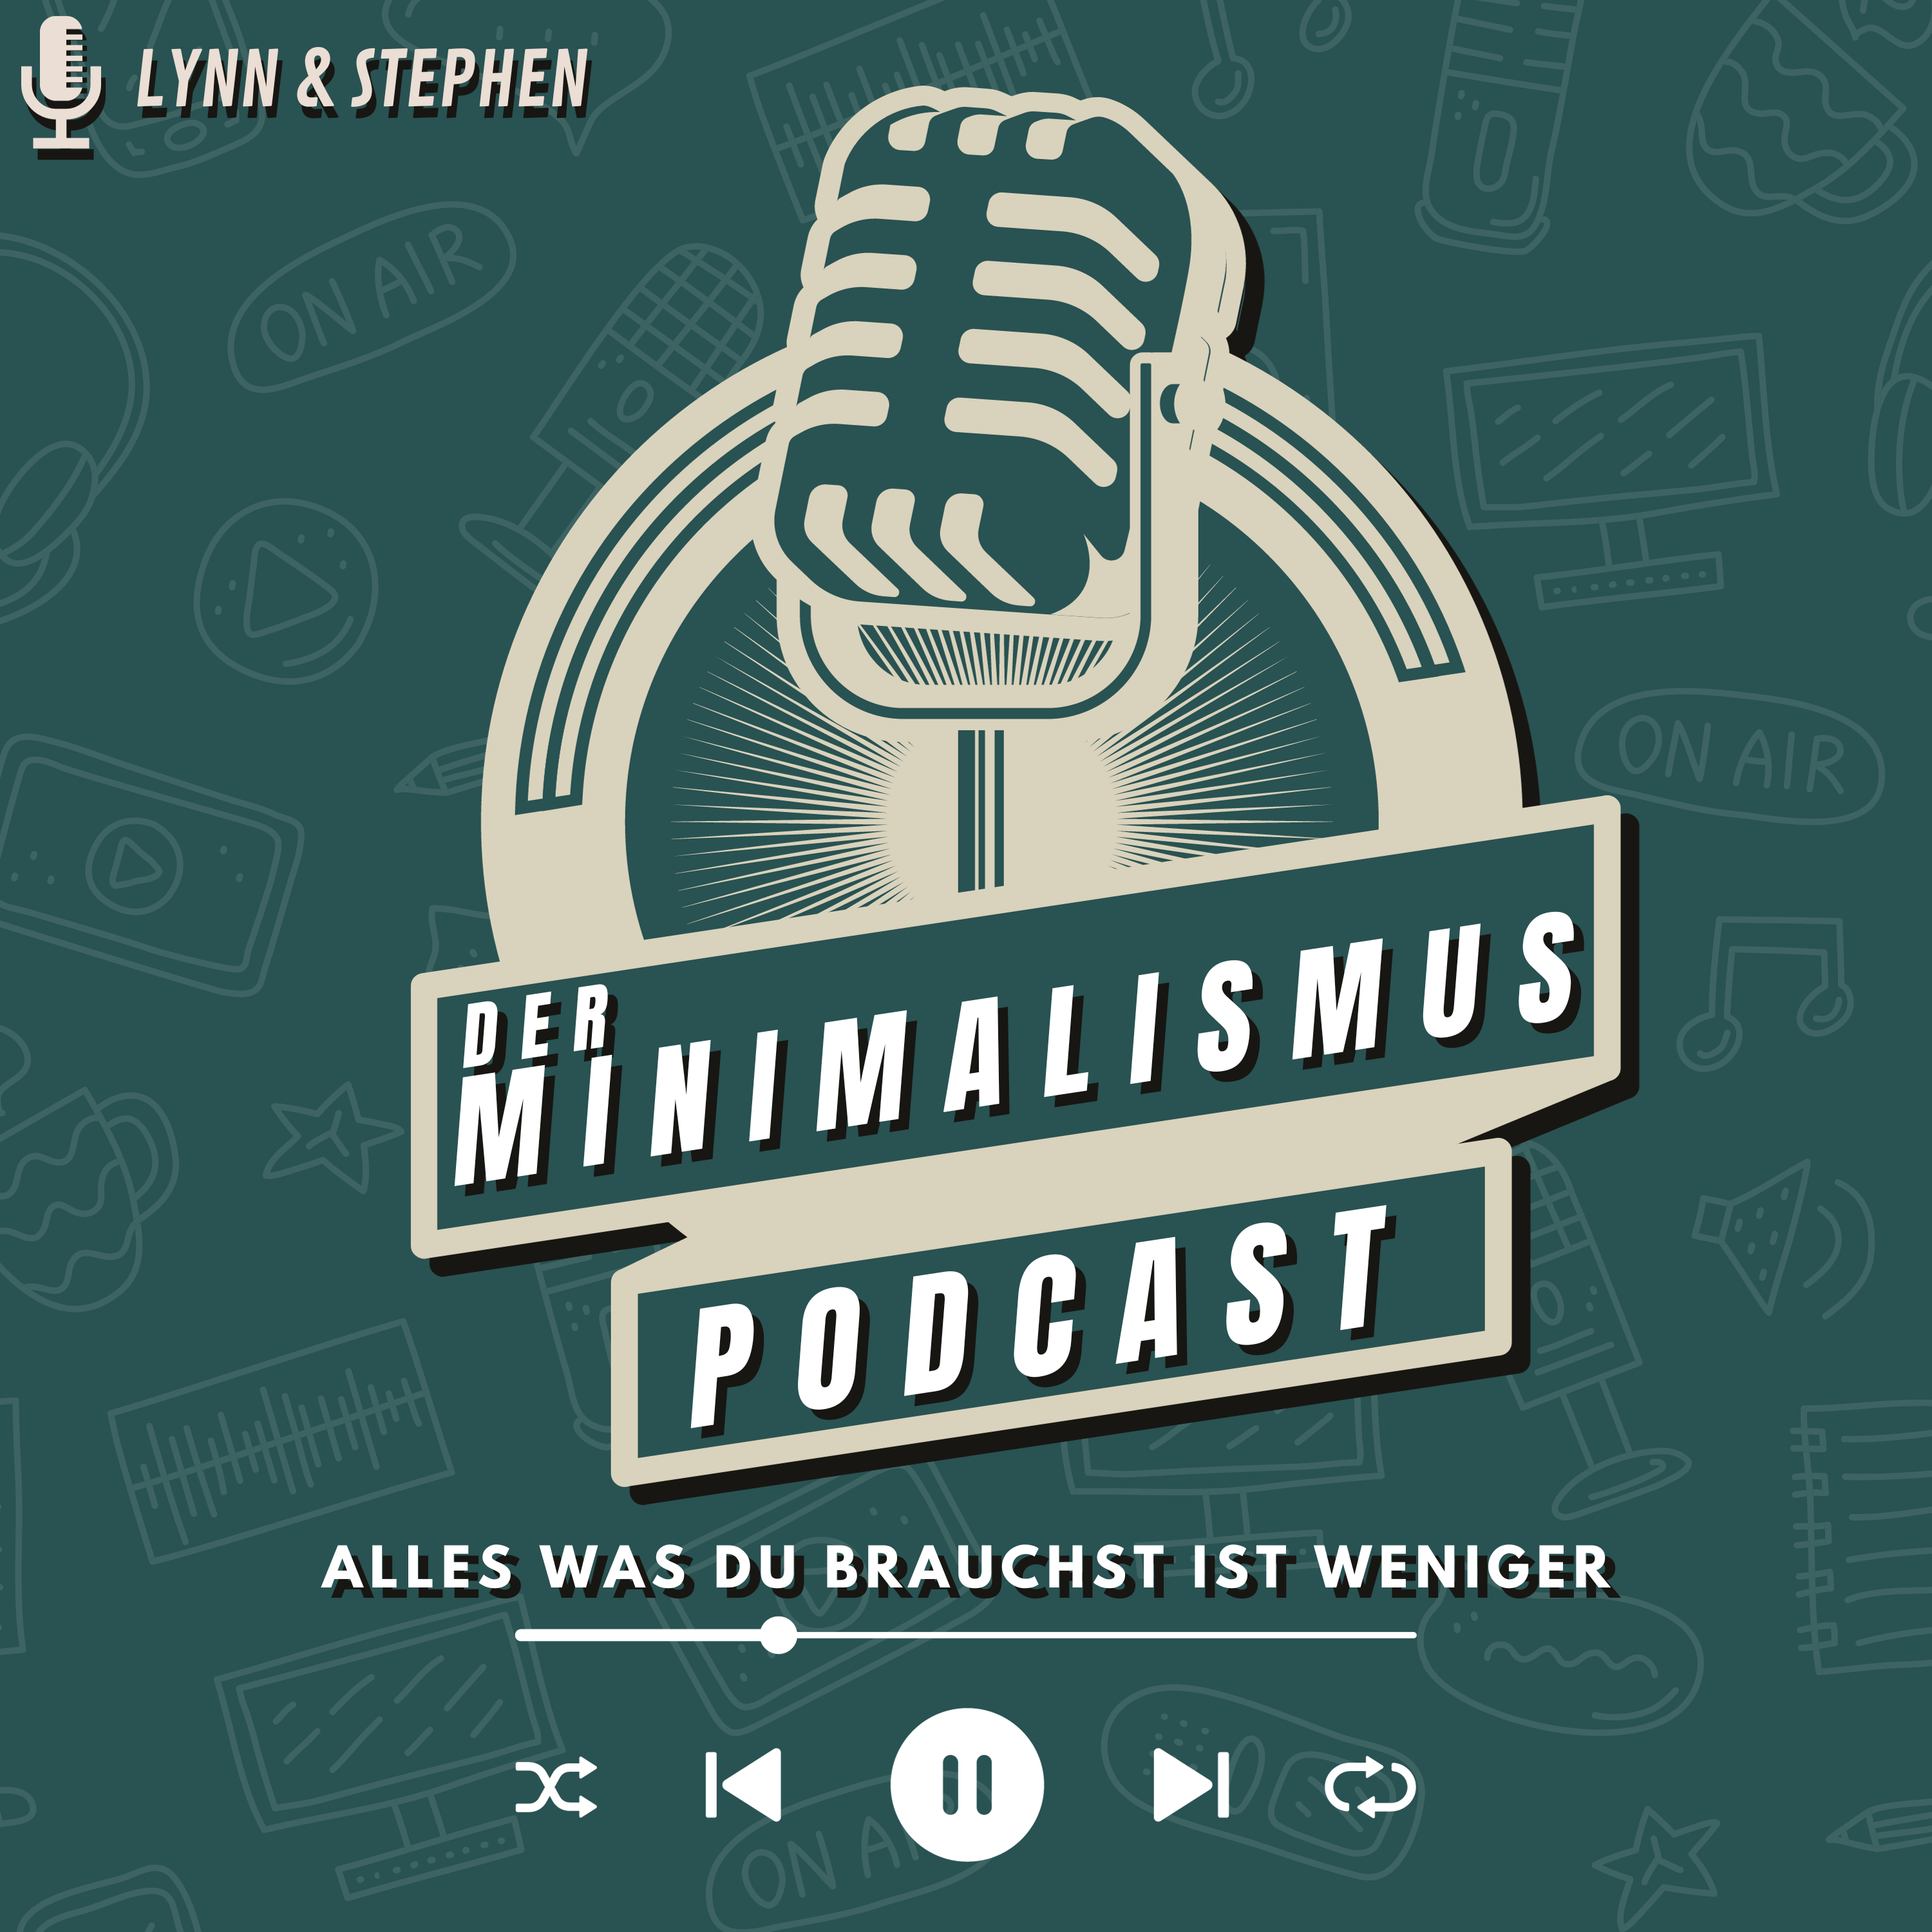 Der Minimalismus Podcast